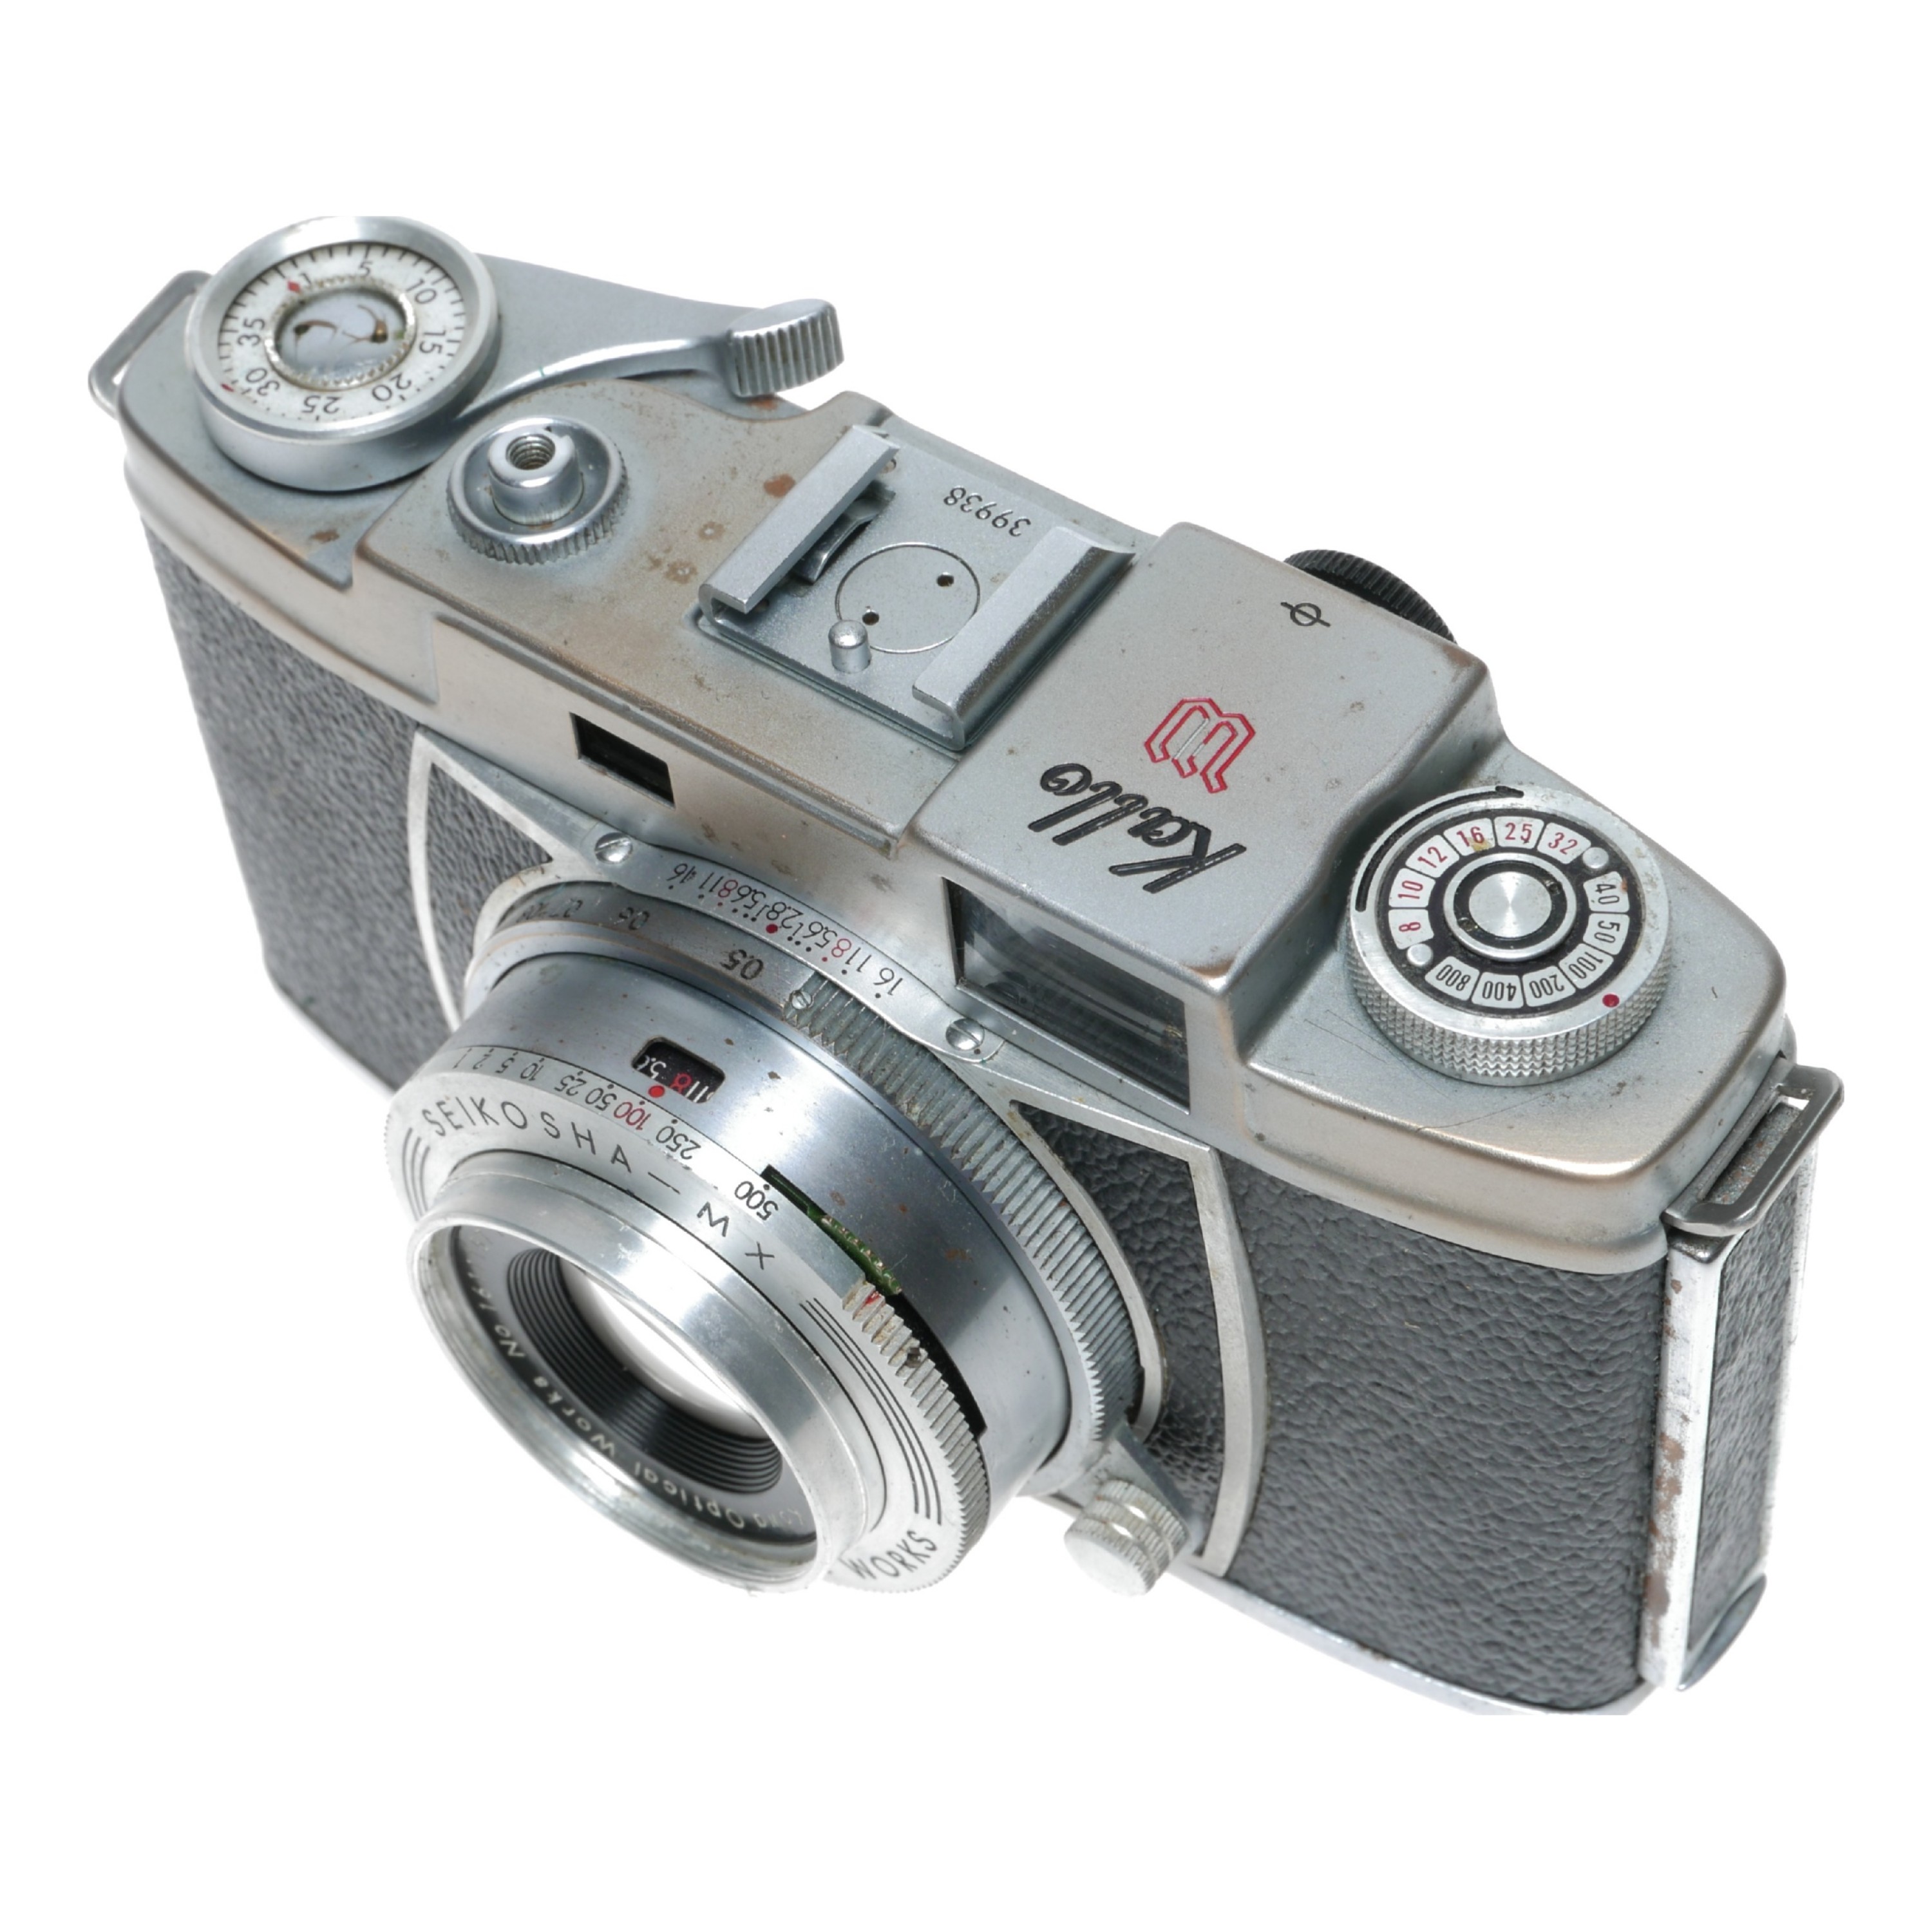 Kowa Kallo W Wide Rangefinder 35mm Film Camera Prominar 2.8/35